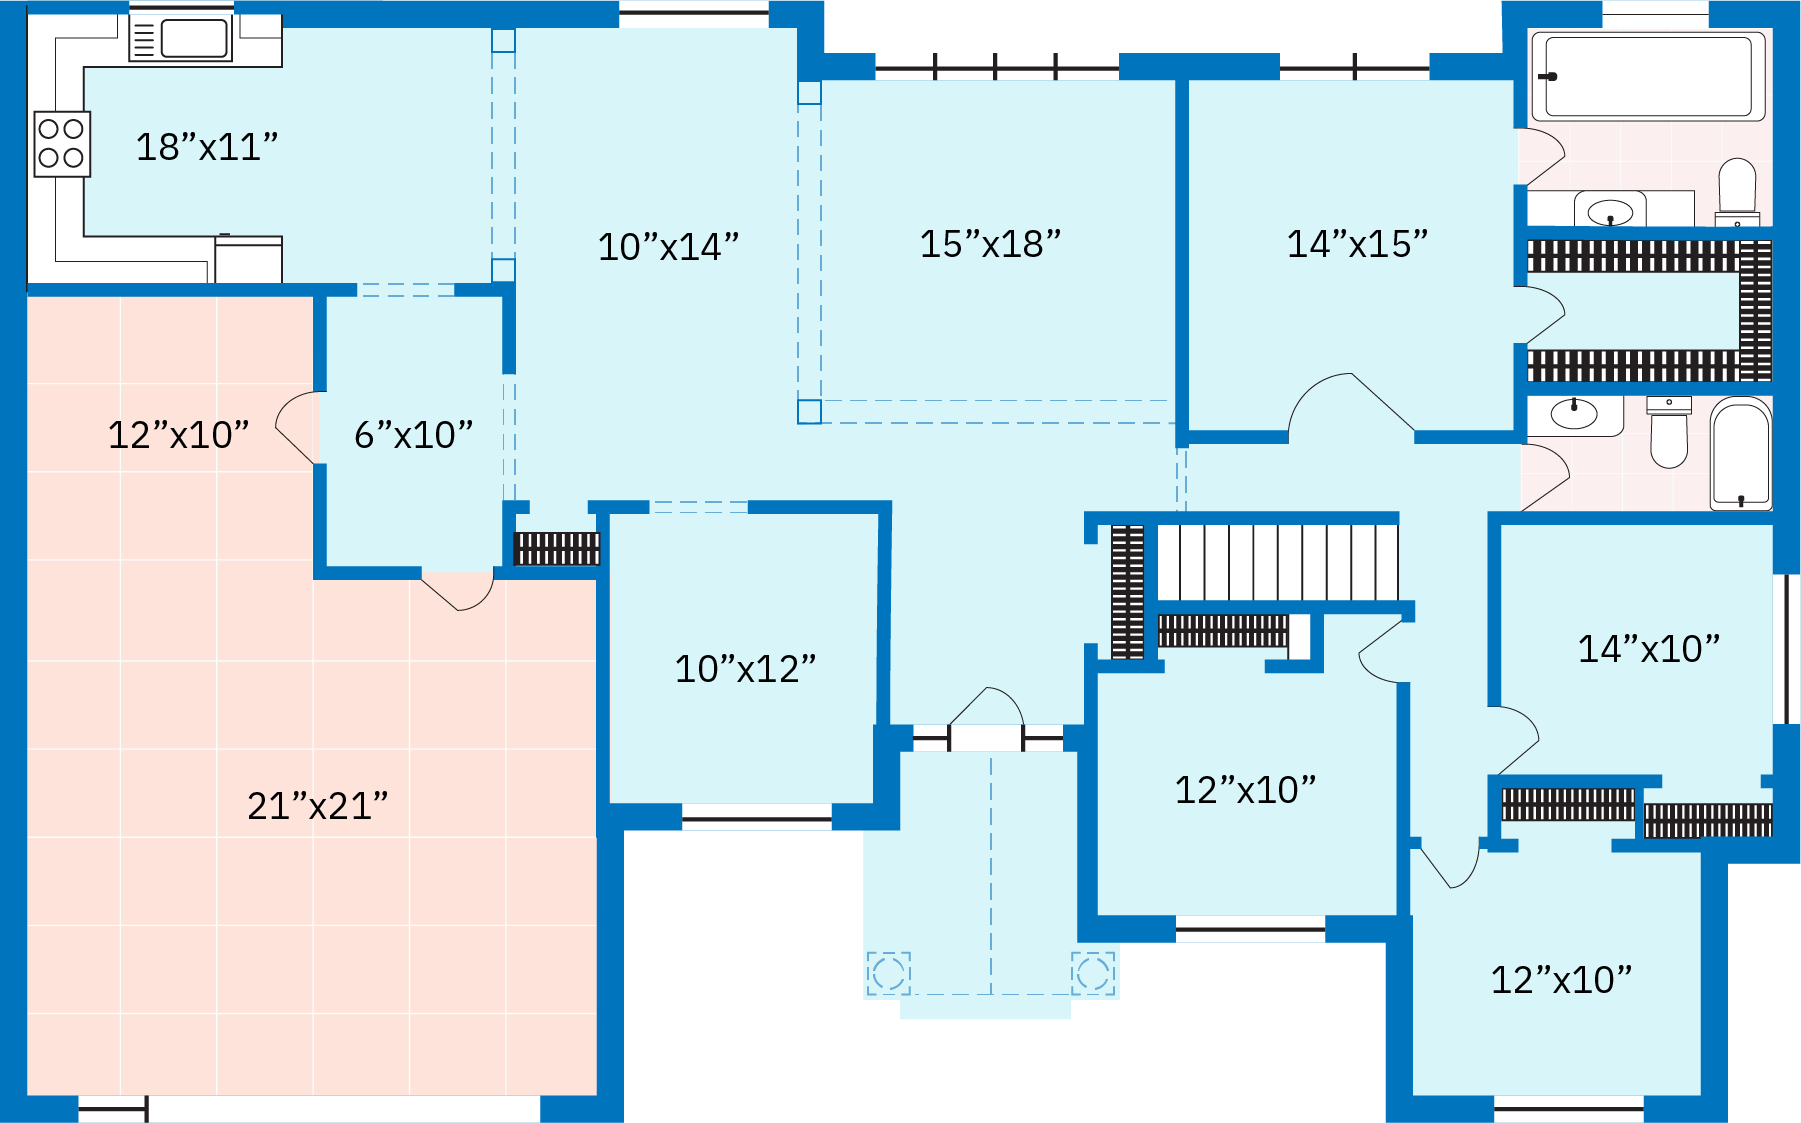 Le plan d'une maison américaine de classe moyenne du 21e siècle. Le plan d'étage représente une maison d'un étage avec une cuisine, quatre chambres, deux salles de bains, une salle familiale, un salon, des marches menant au sous-sol et un garage attenant pour deux voitures.